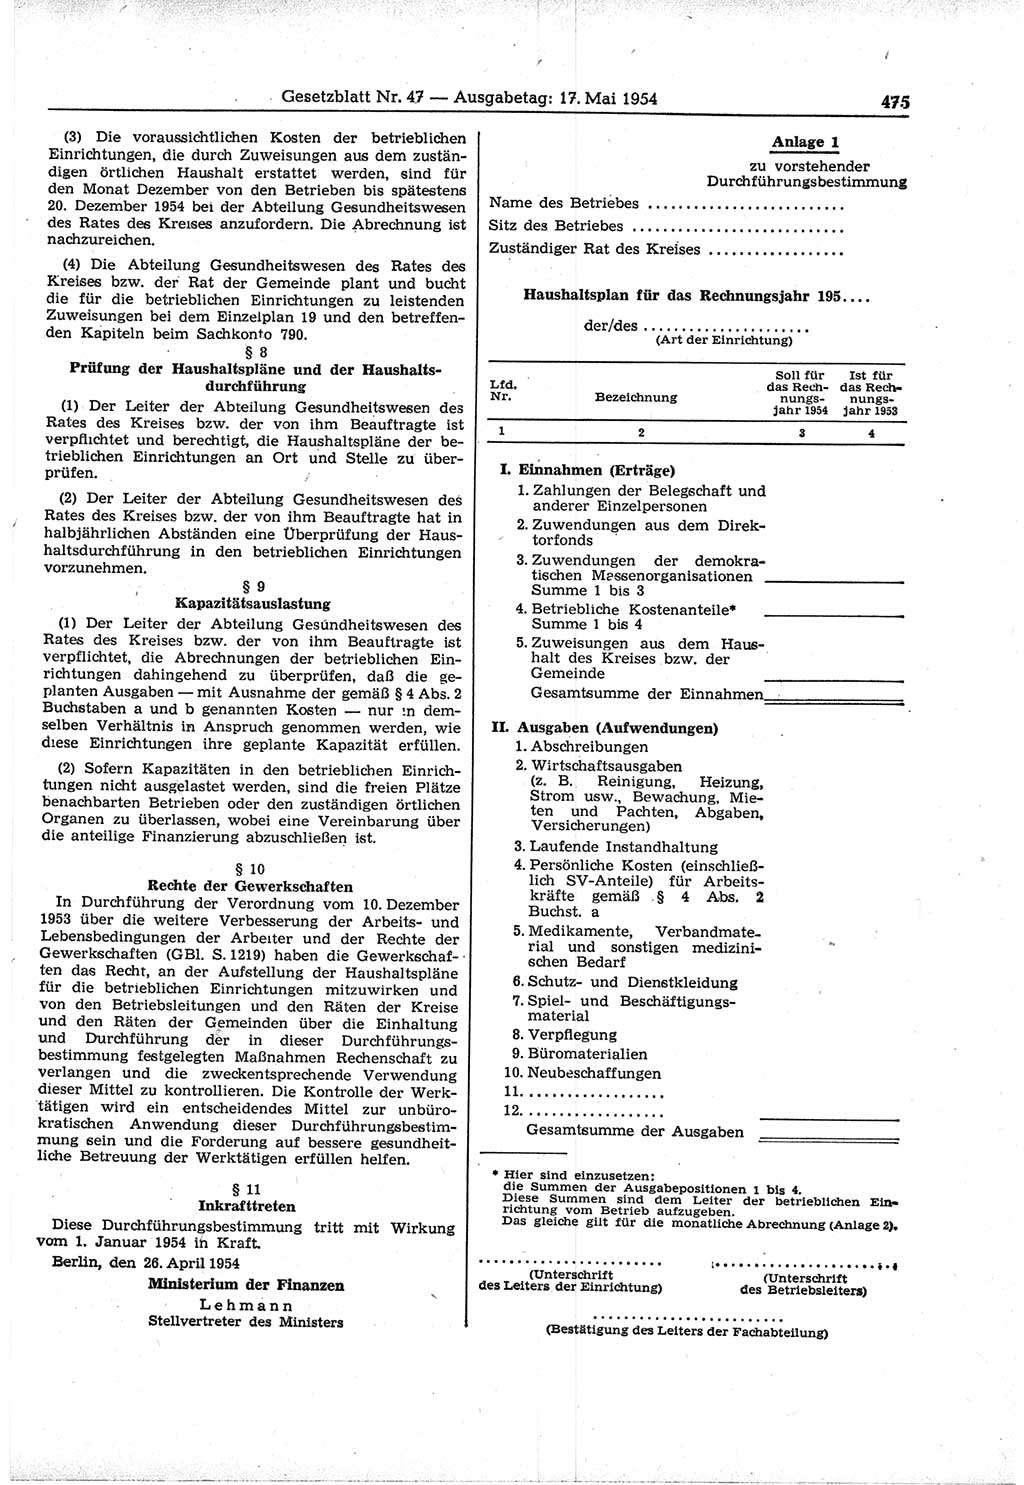 Gesetzblatt (GBl.) der Deutschen Demokratischen Republik (DDR) 1954, Seite 475 (GBl. DDR 1954, S. 475)